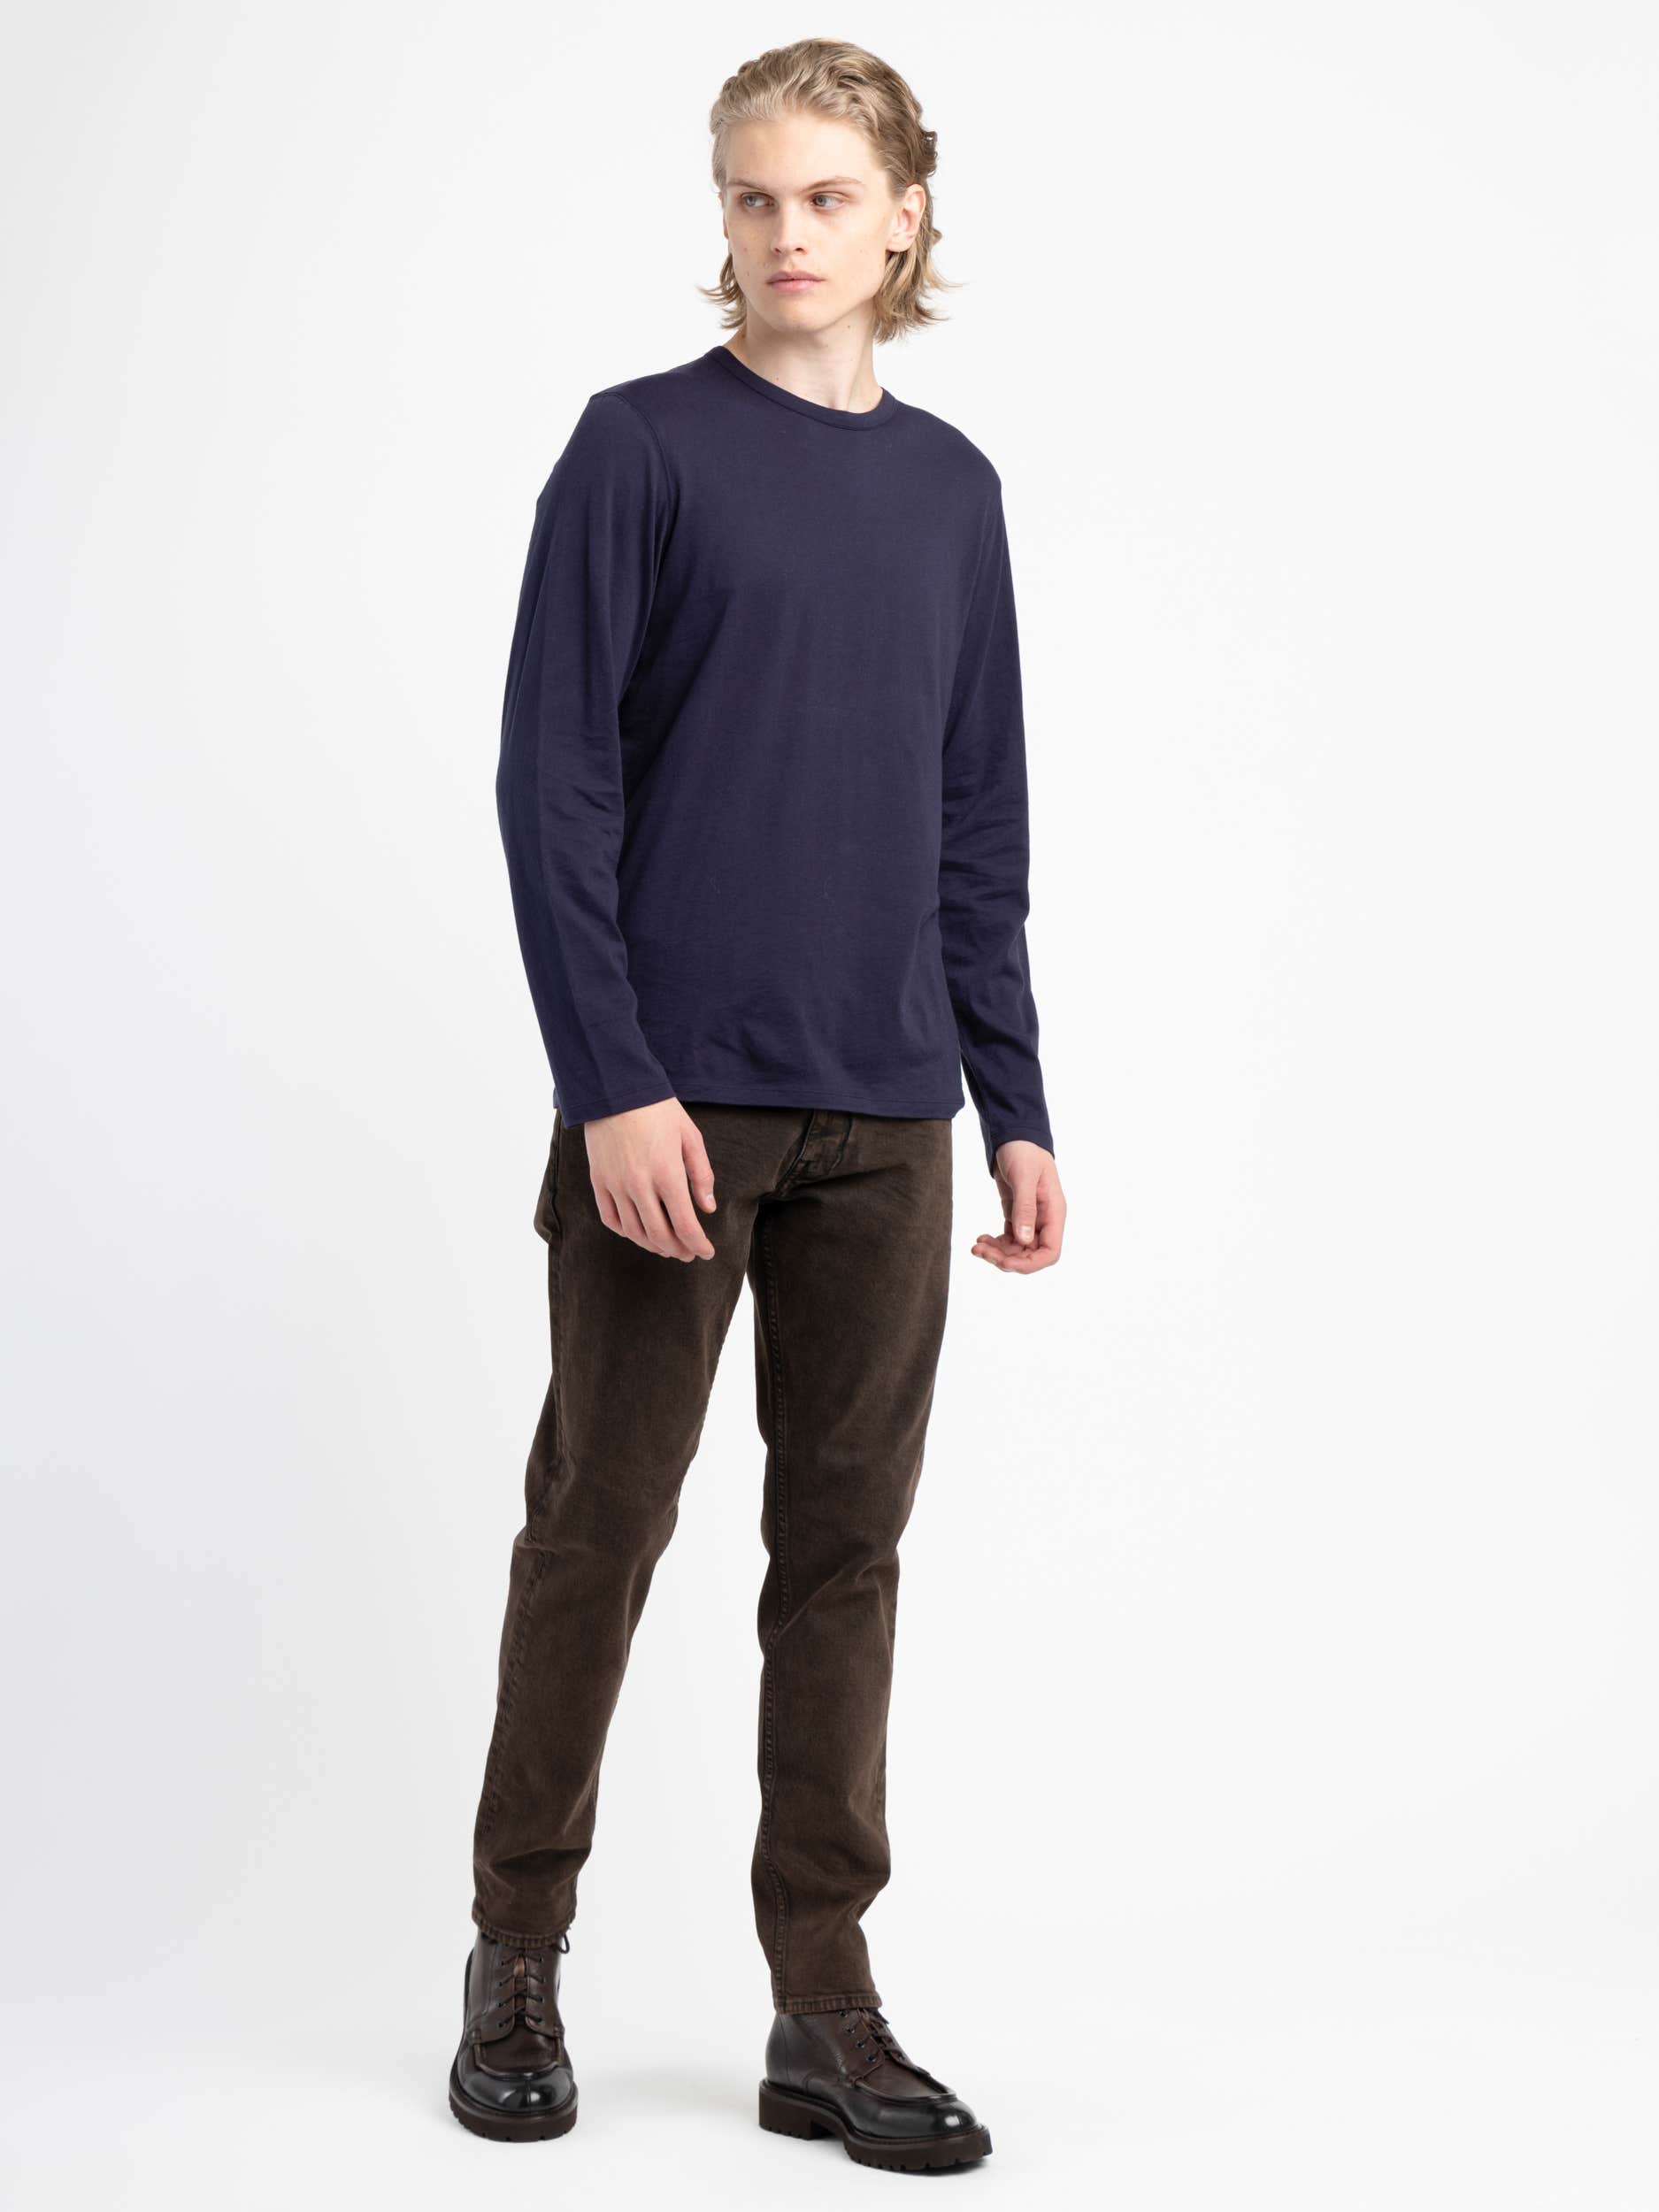 Navy Cotton/Cashmere Longshirt